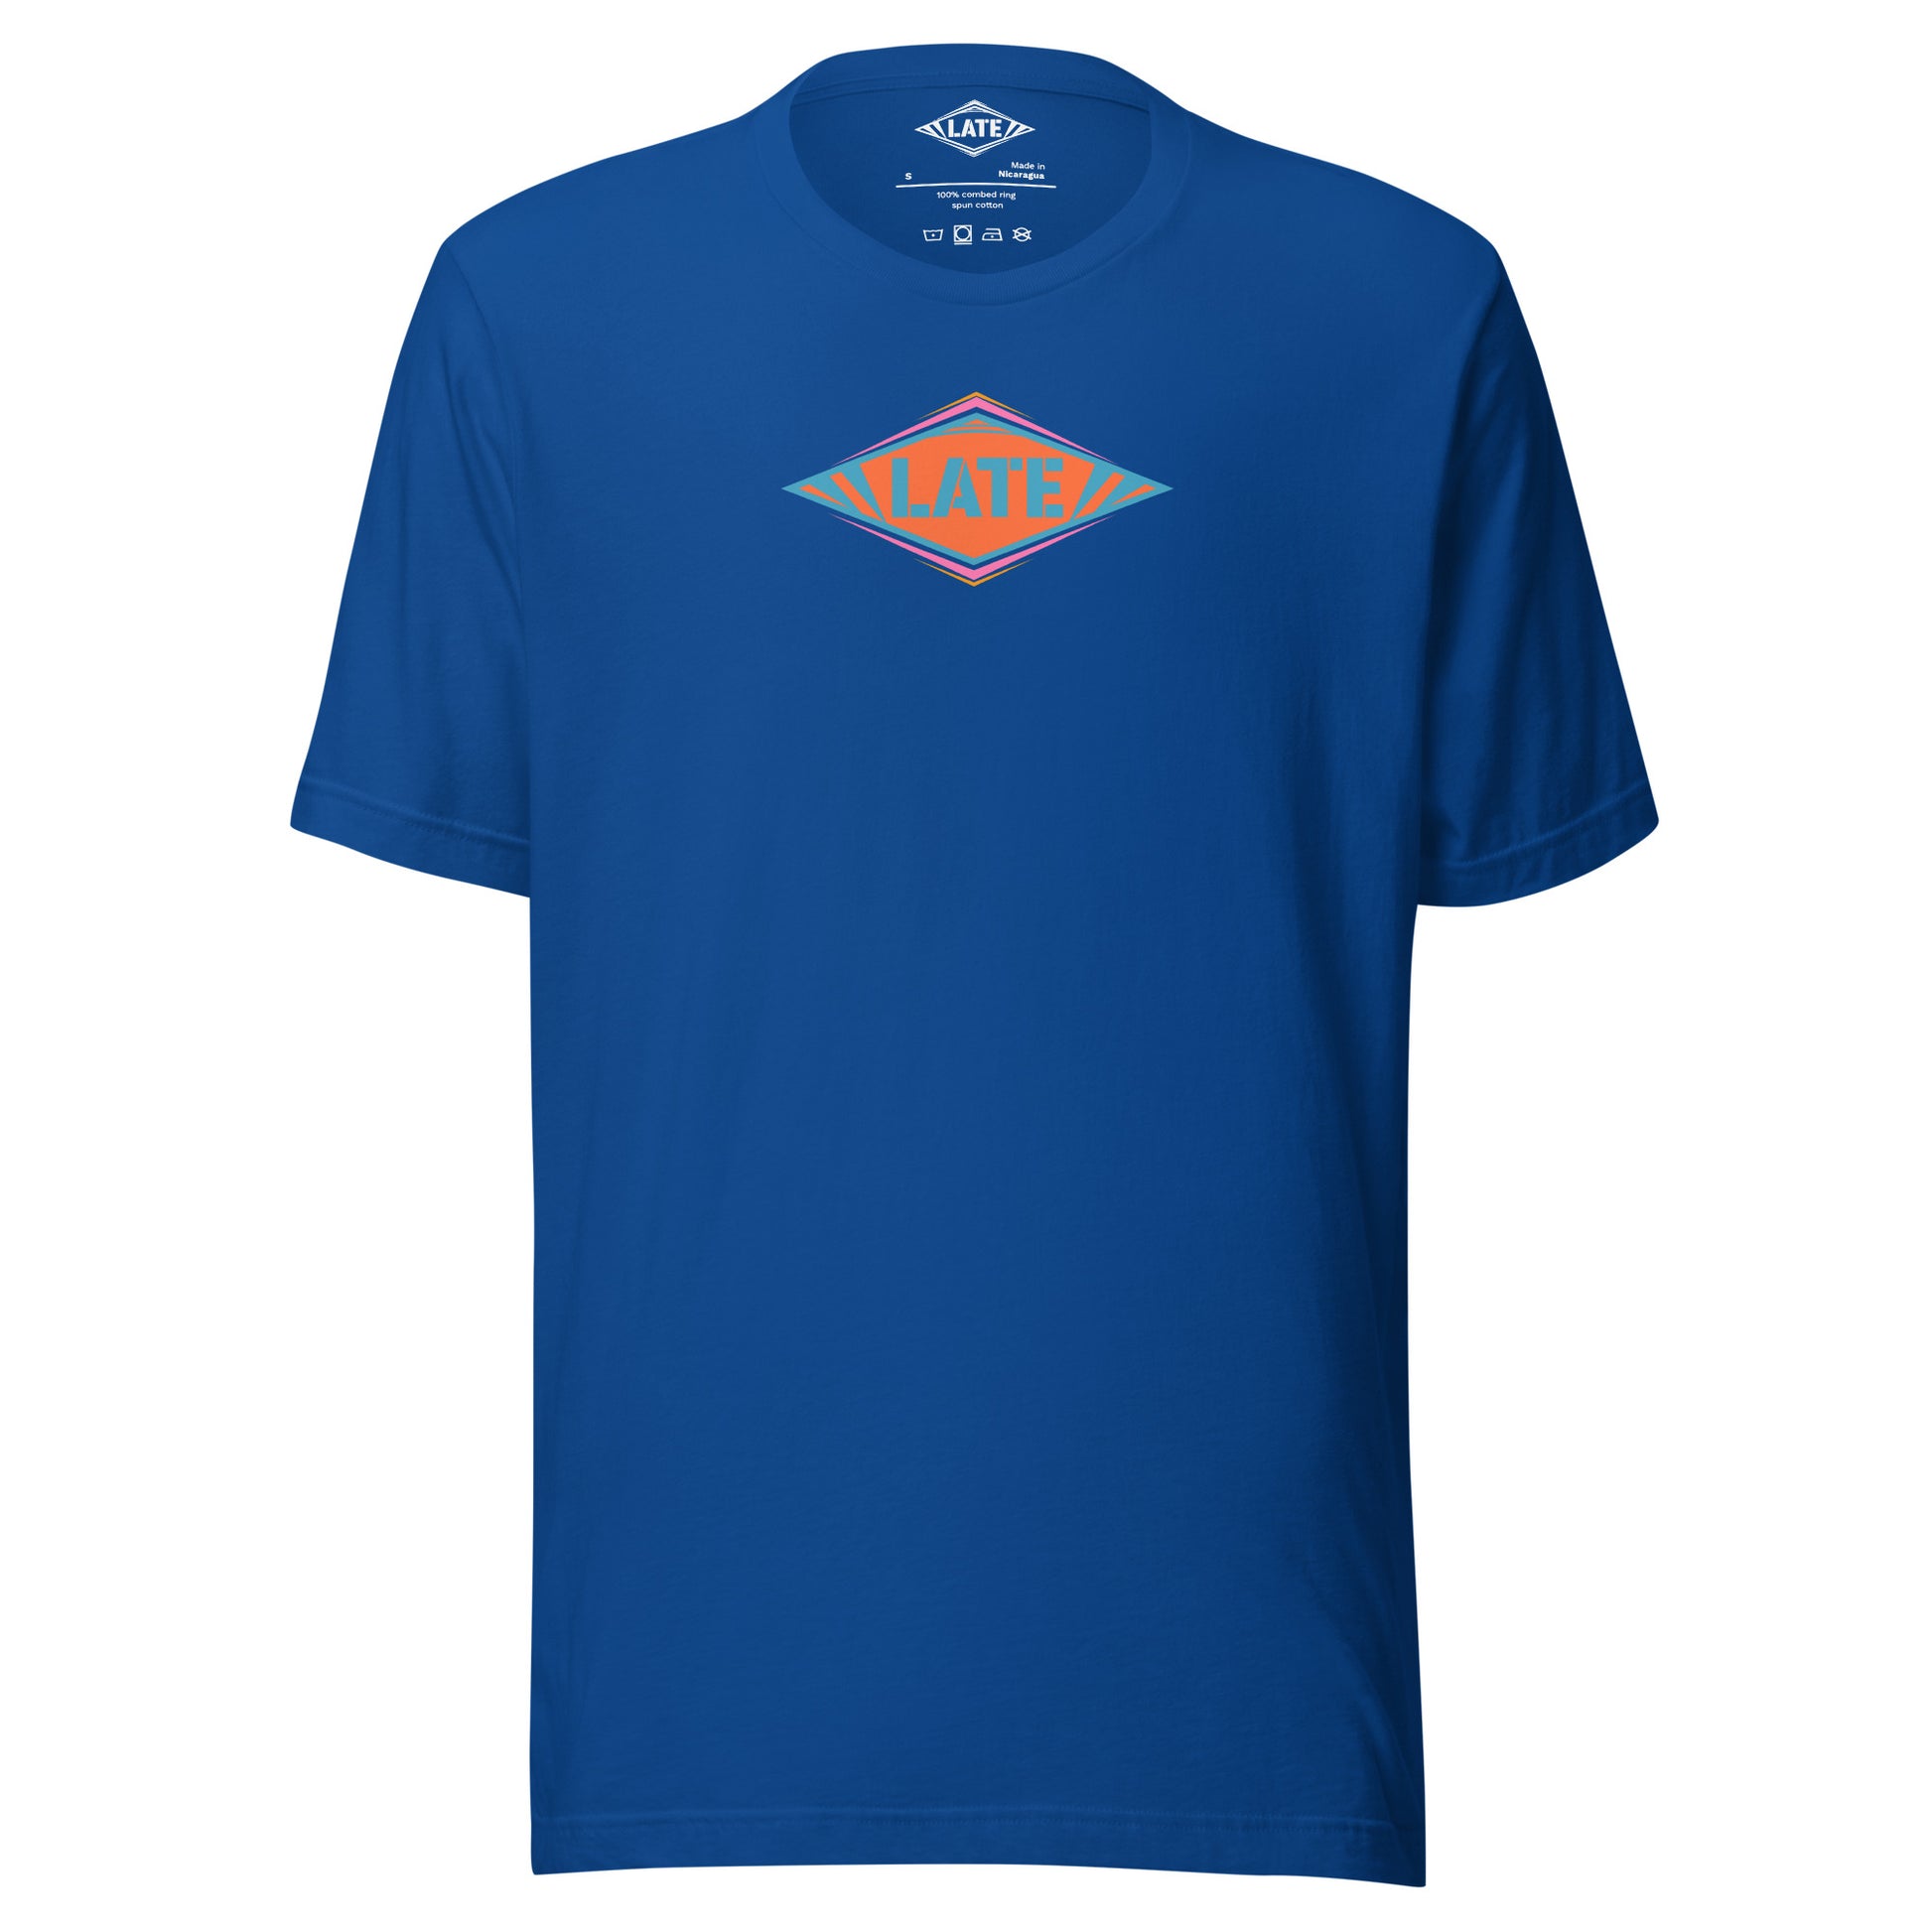 T-Shirt skateboard logo Late coloré bleu orange et violet, t-shirt unisex couleur bleu